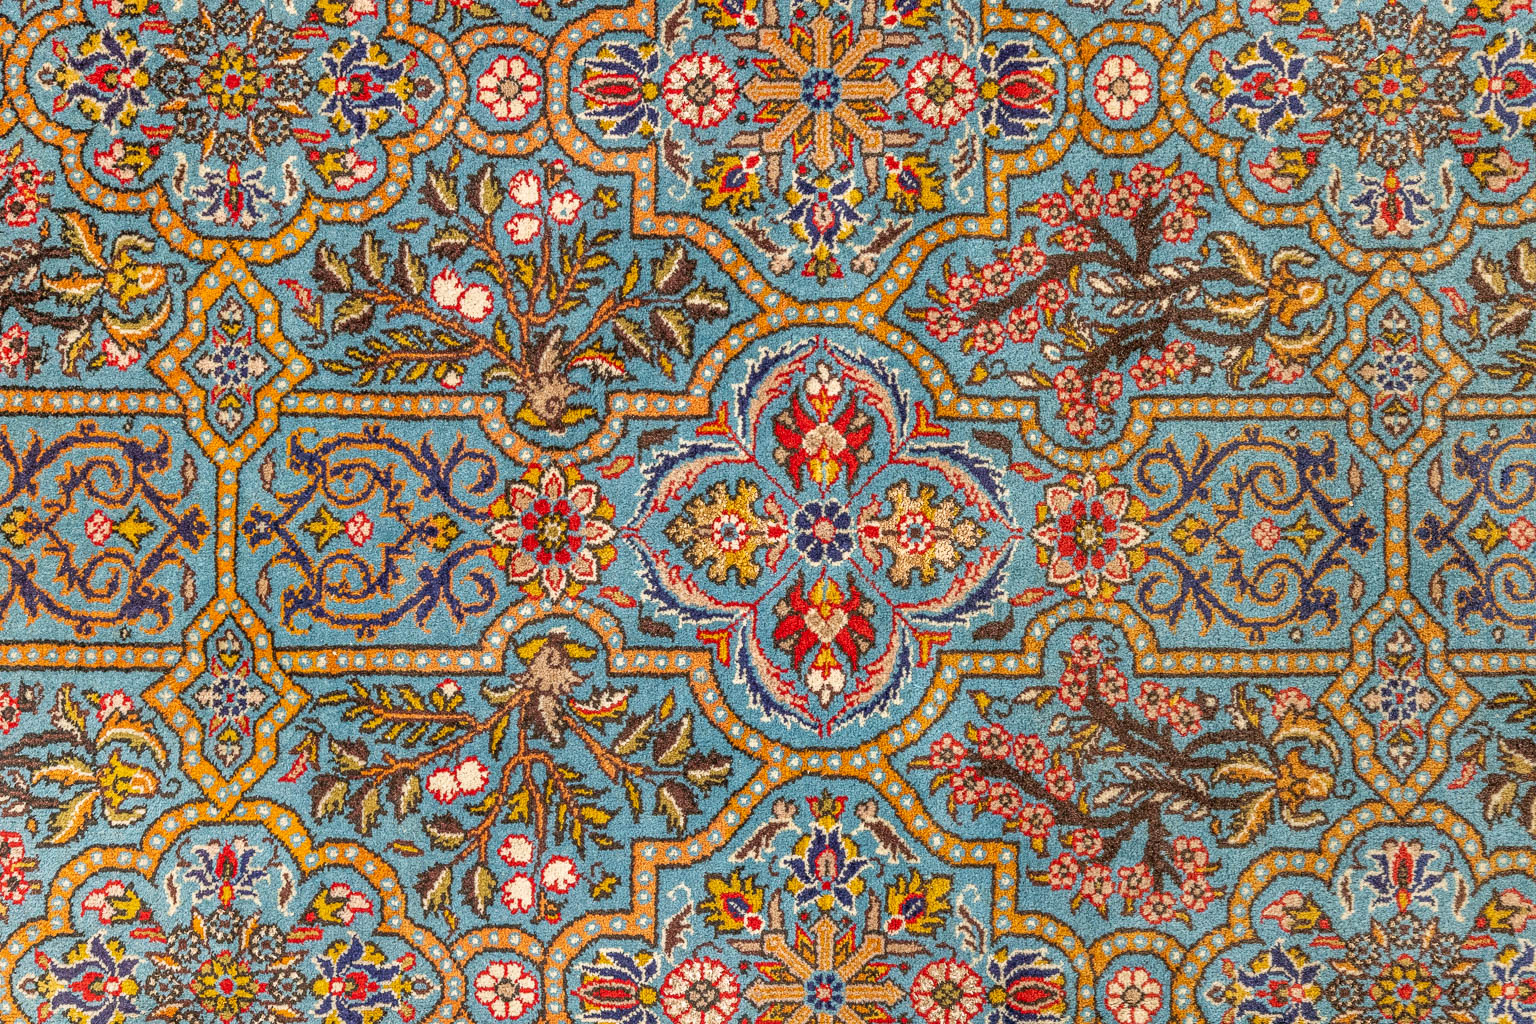 An Oriental hand-made carpet, Bakhtiar. (232 x 340 cm). (232 x 340 cm)